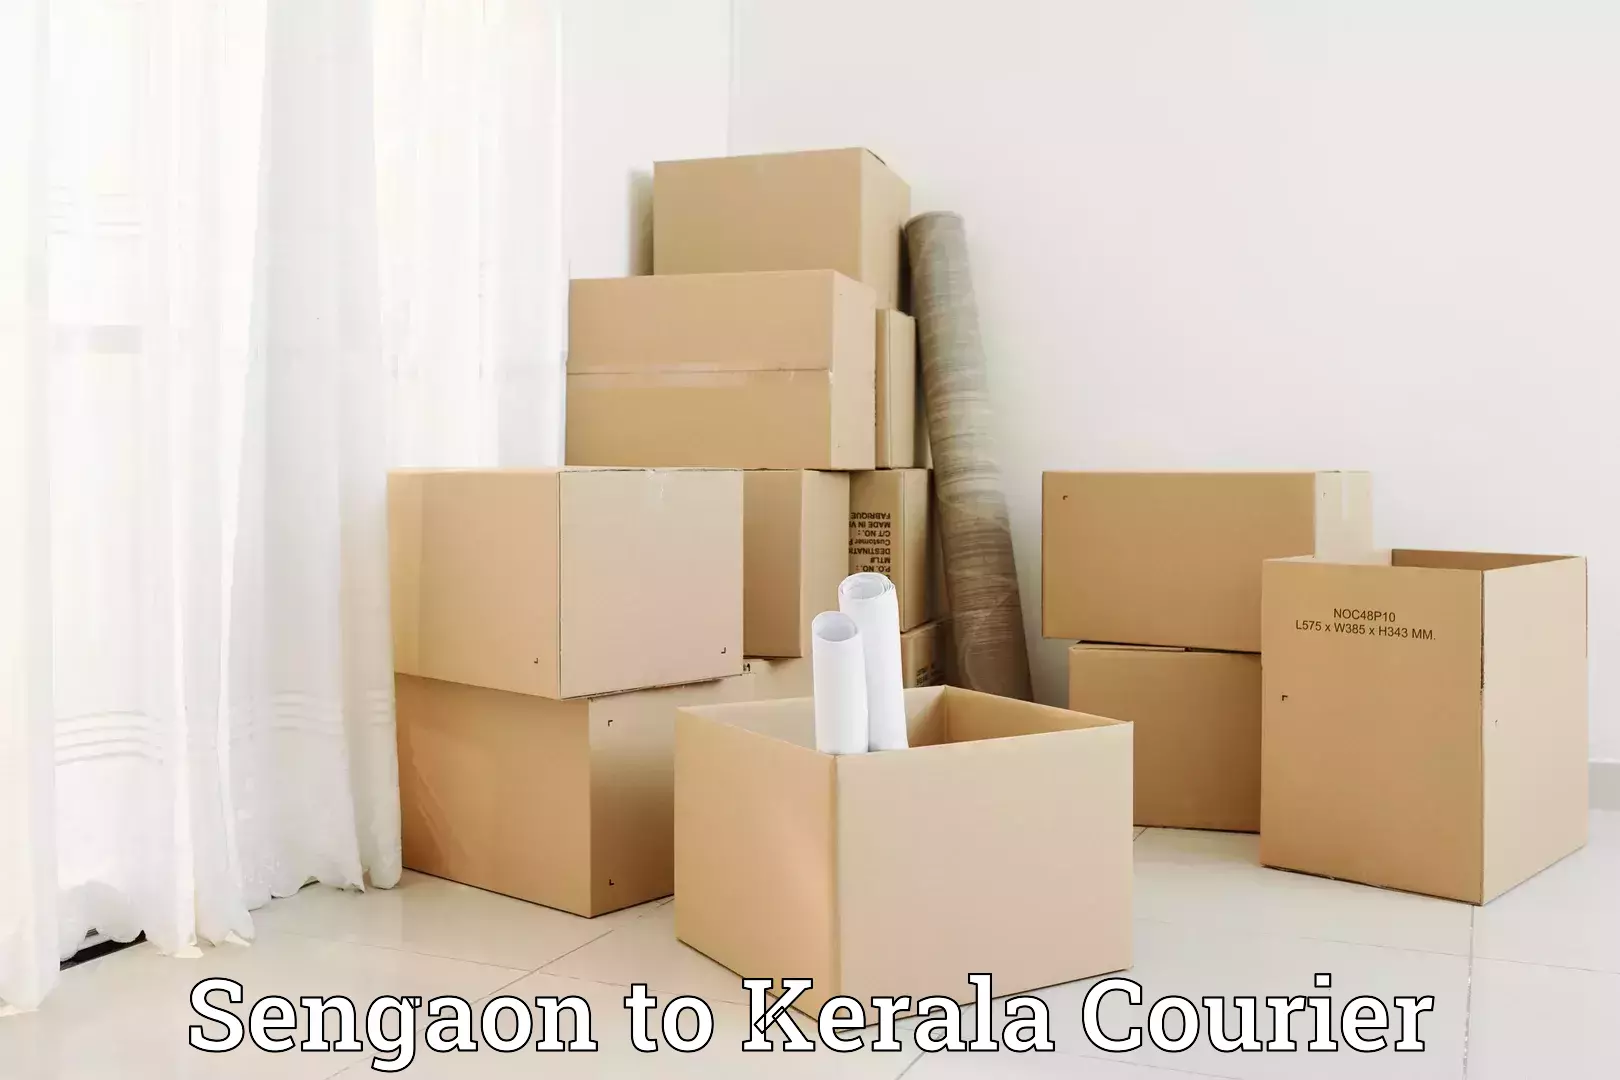 Luggage delivery system Sengaon to Kakkayam